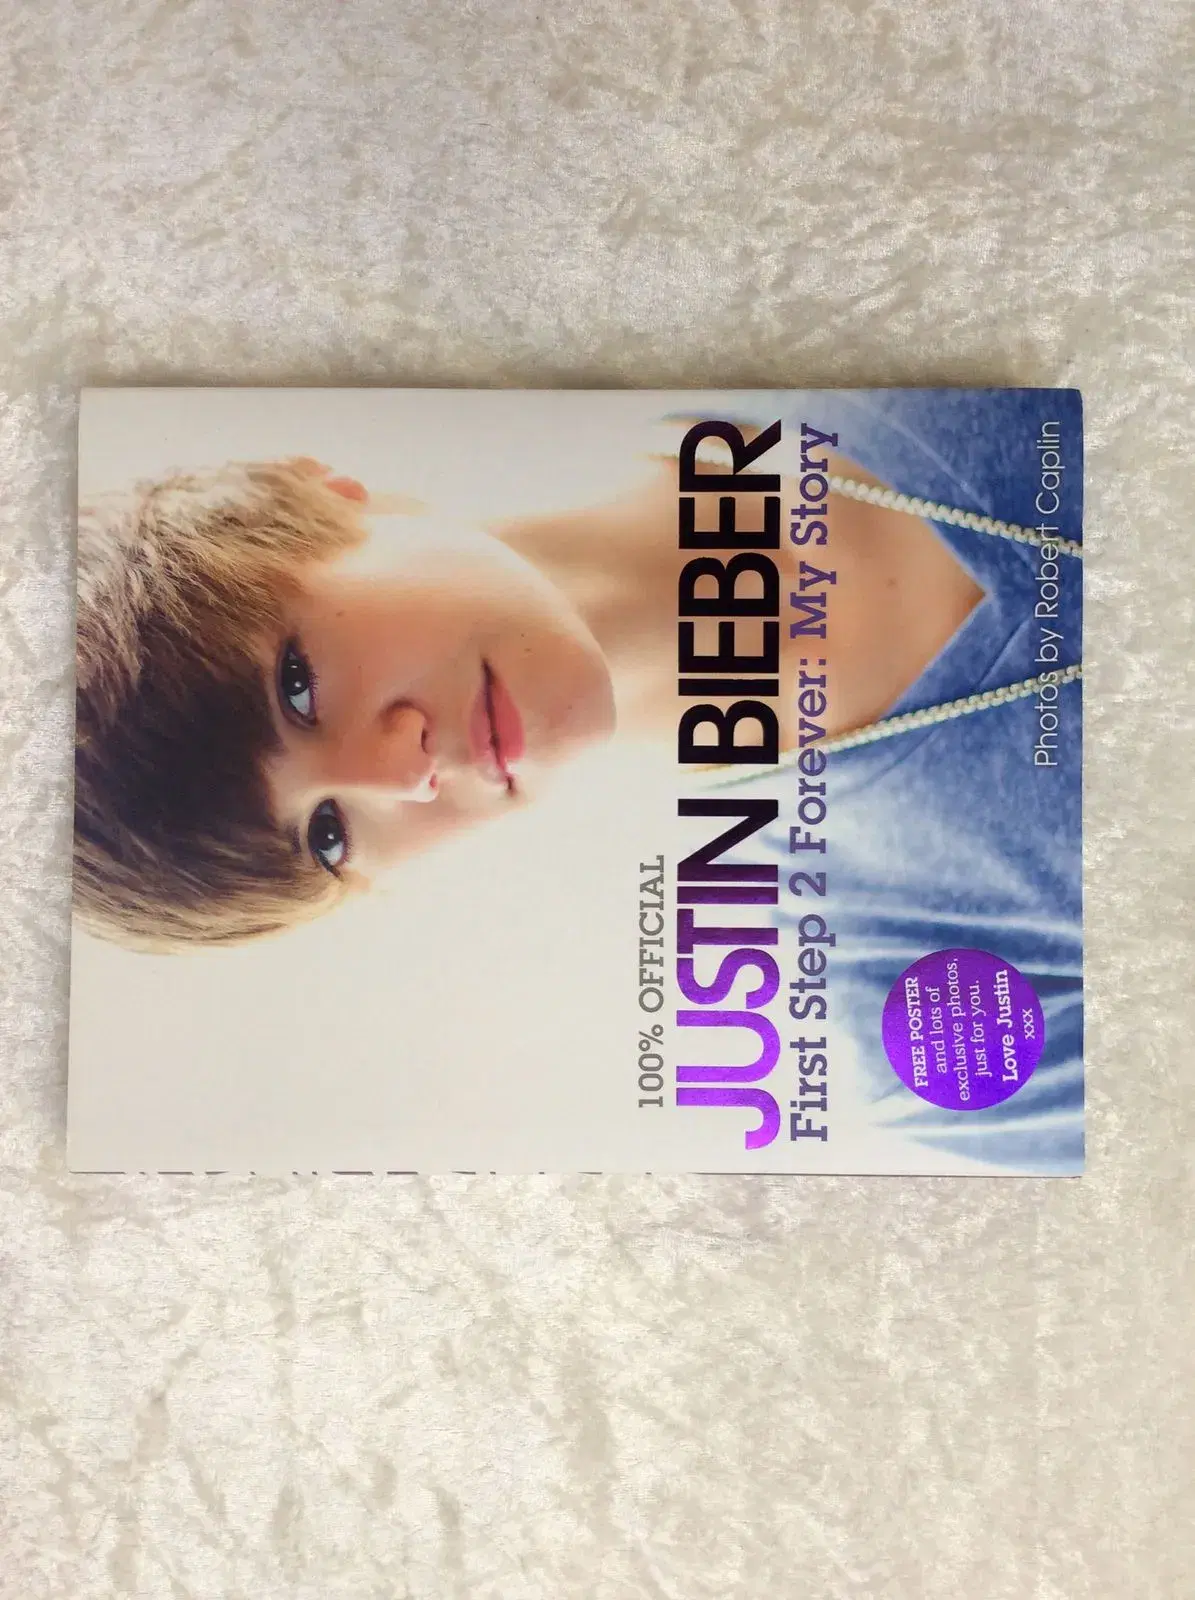 Spritnye Justin Bieber bøger